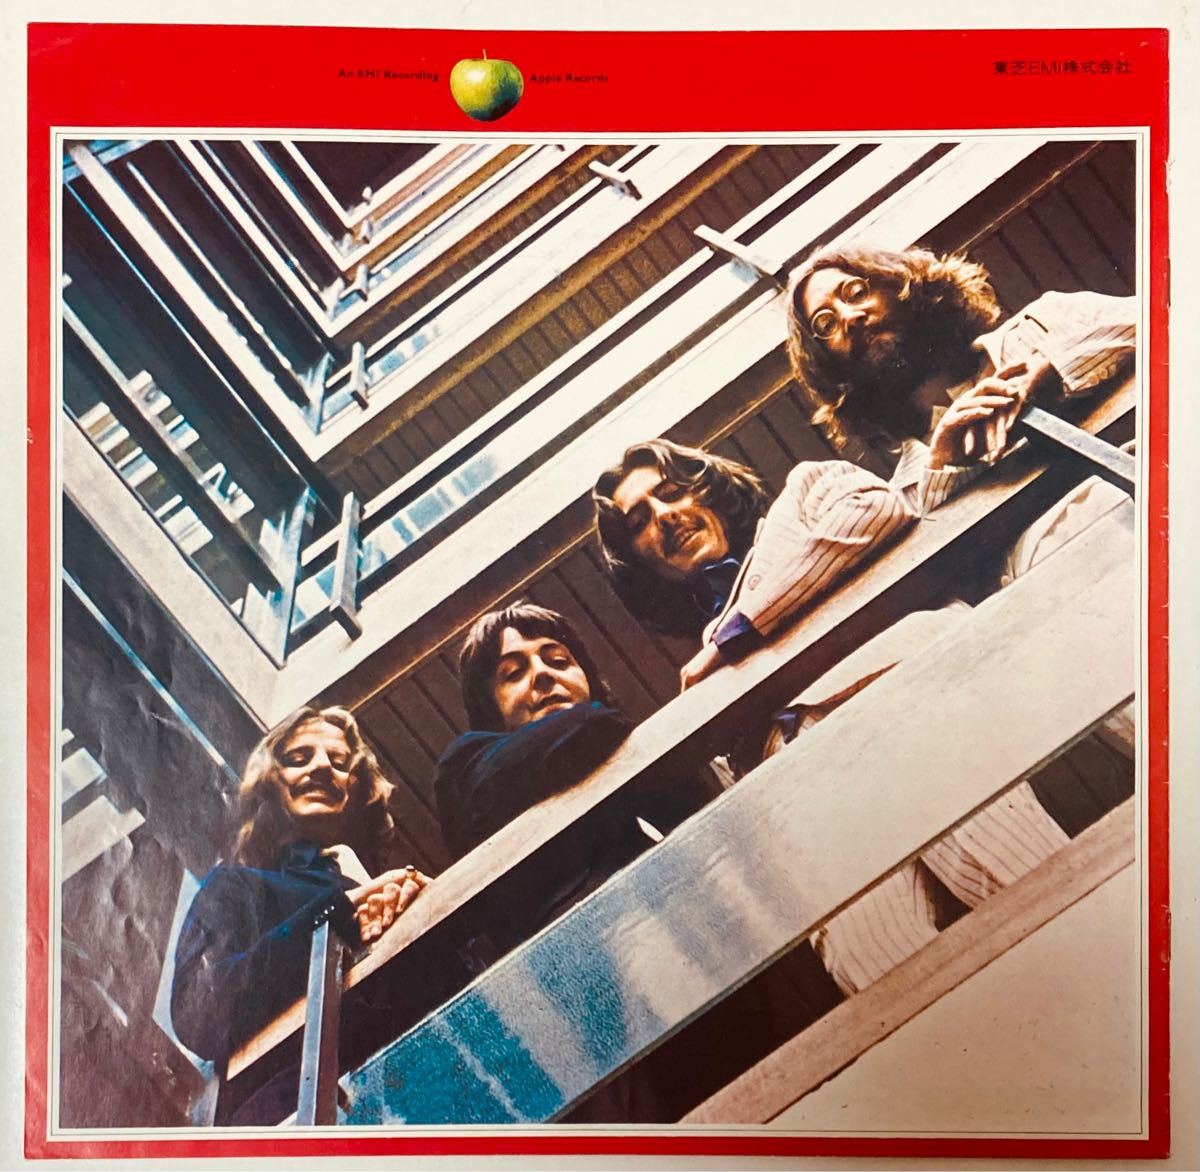 レア【THE BEATLES】1962ｰ1966 赤盤 歌詞カード　　　　　ザ・ビートルズ　 Apple